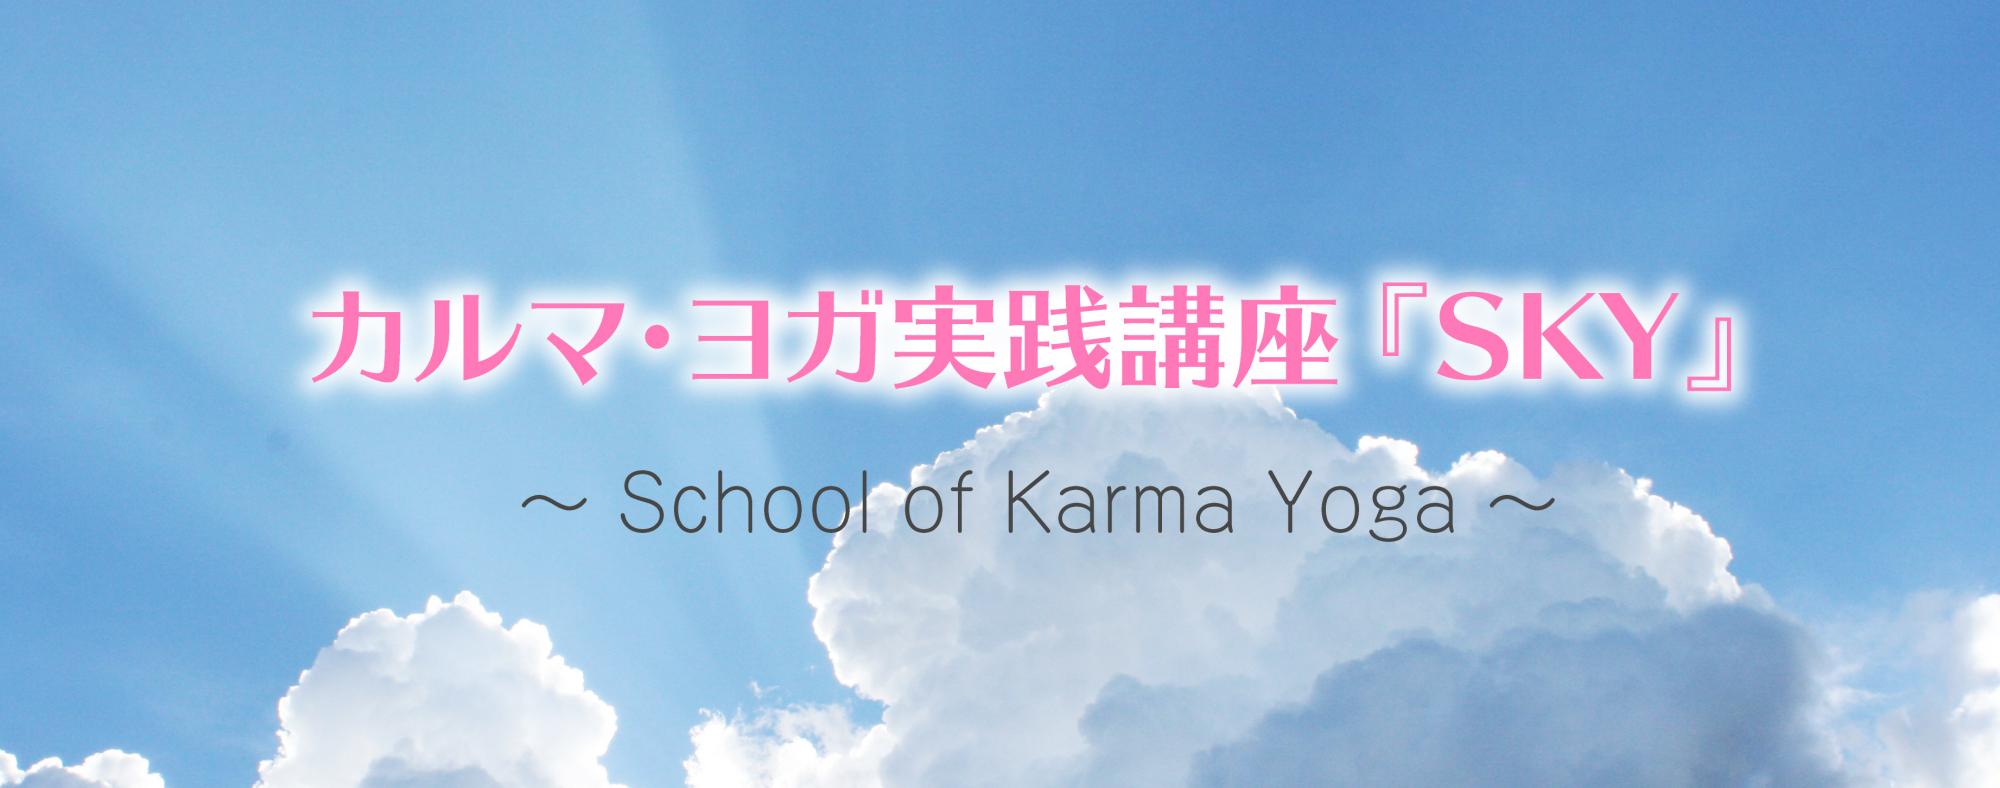 カルマ・ヨガ実践講座『SKY』〜 School of Karma Yoga 〜